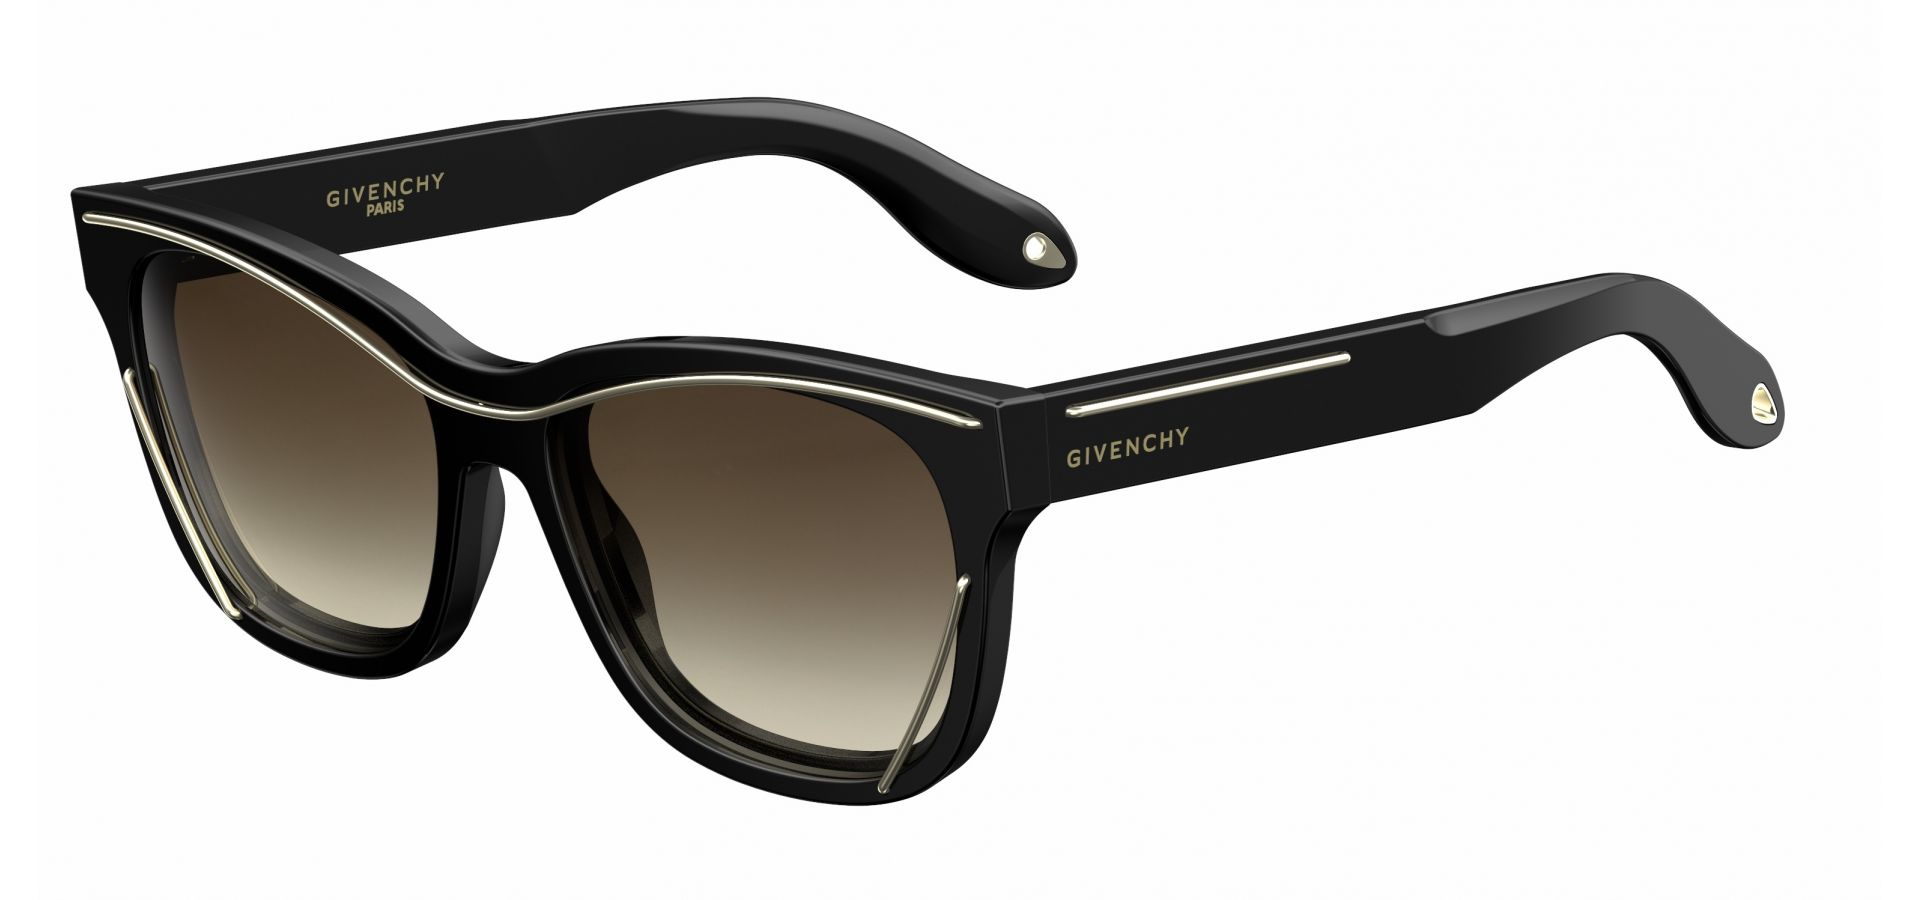 Sončna očala Givenchy GV7028: Barva: črna, Velikost: 56/17/145, Spol: ženska, Material: acetat